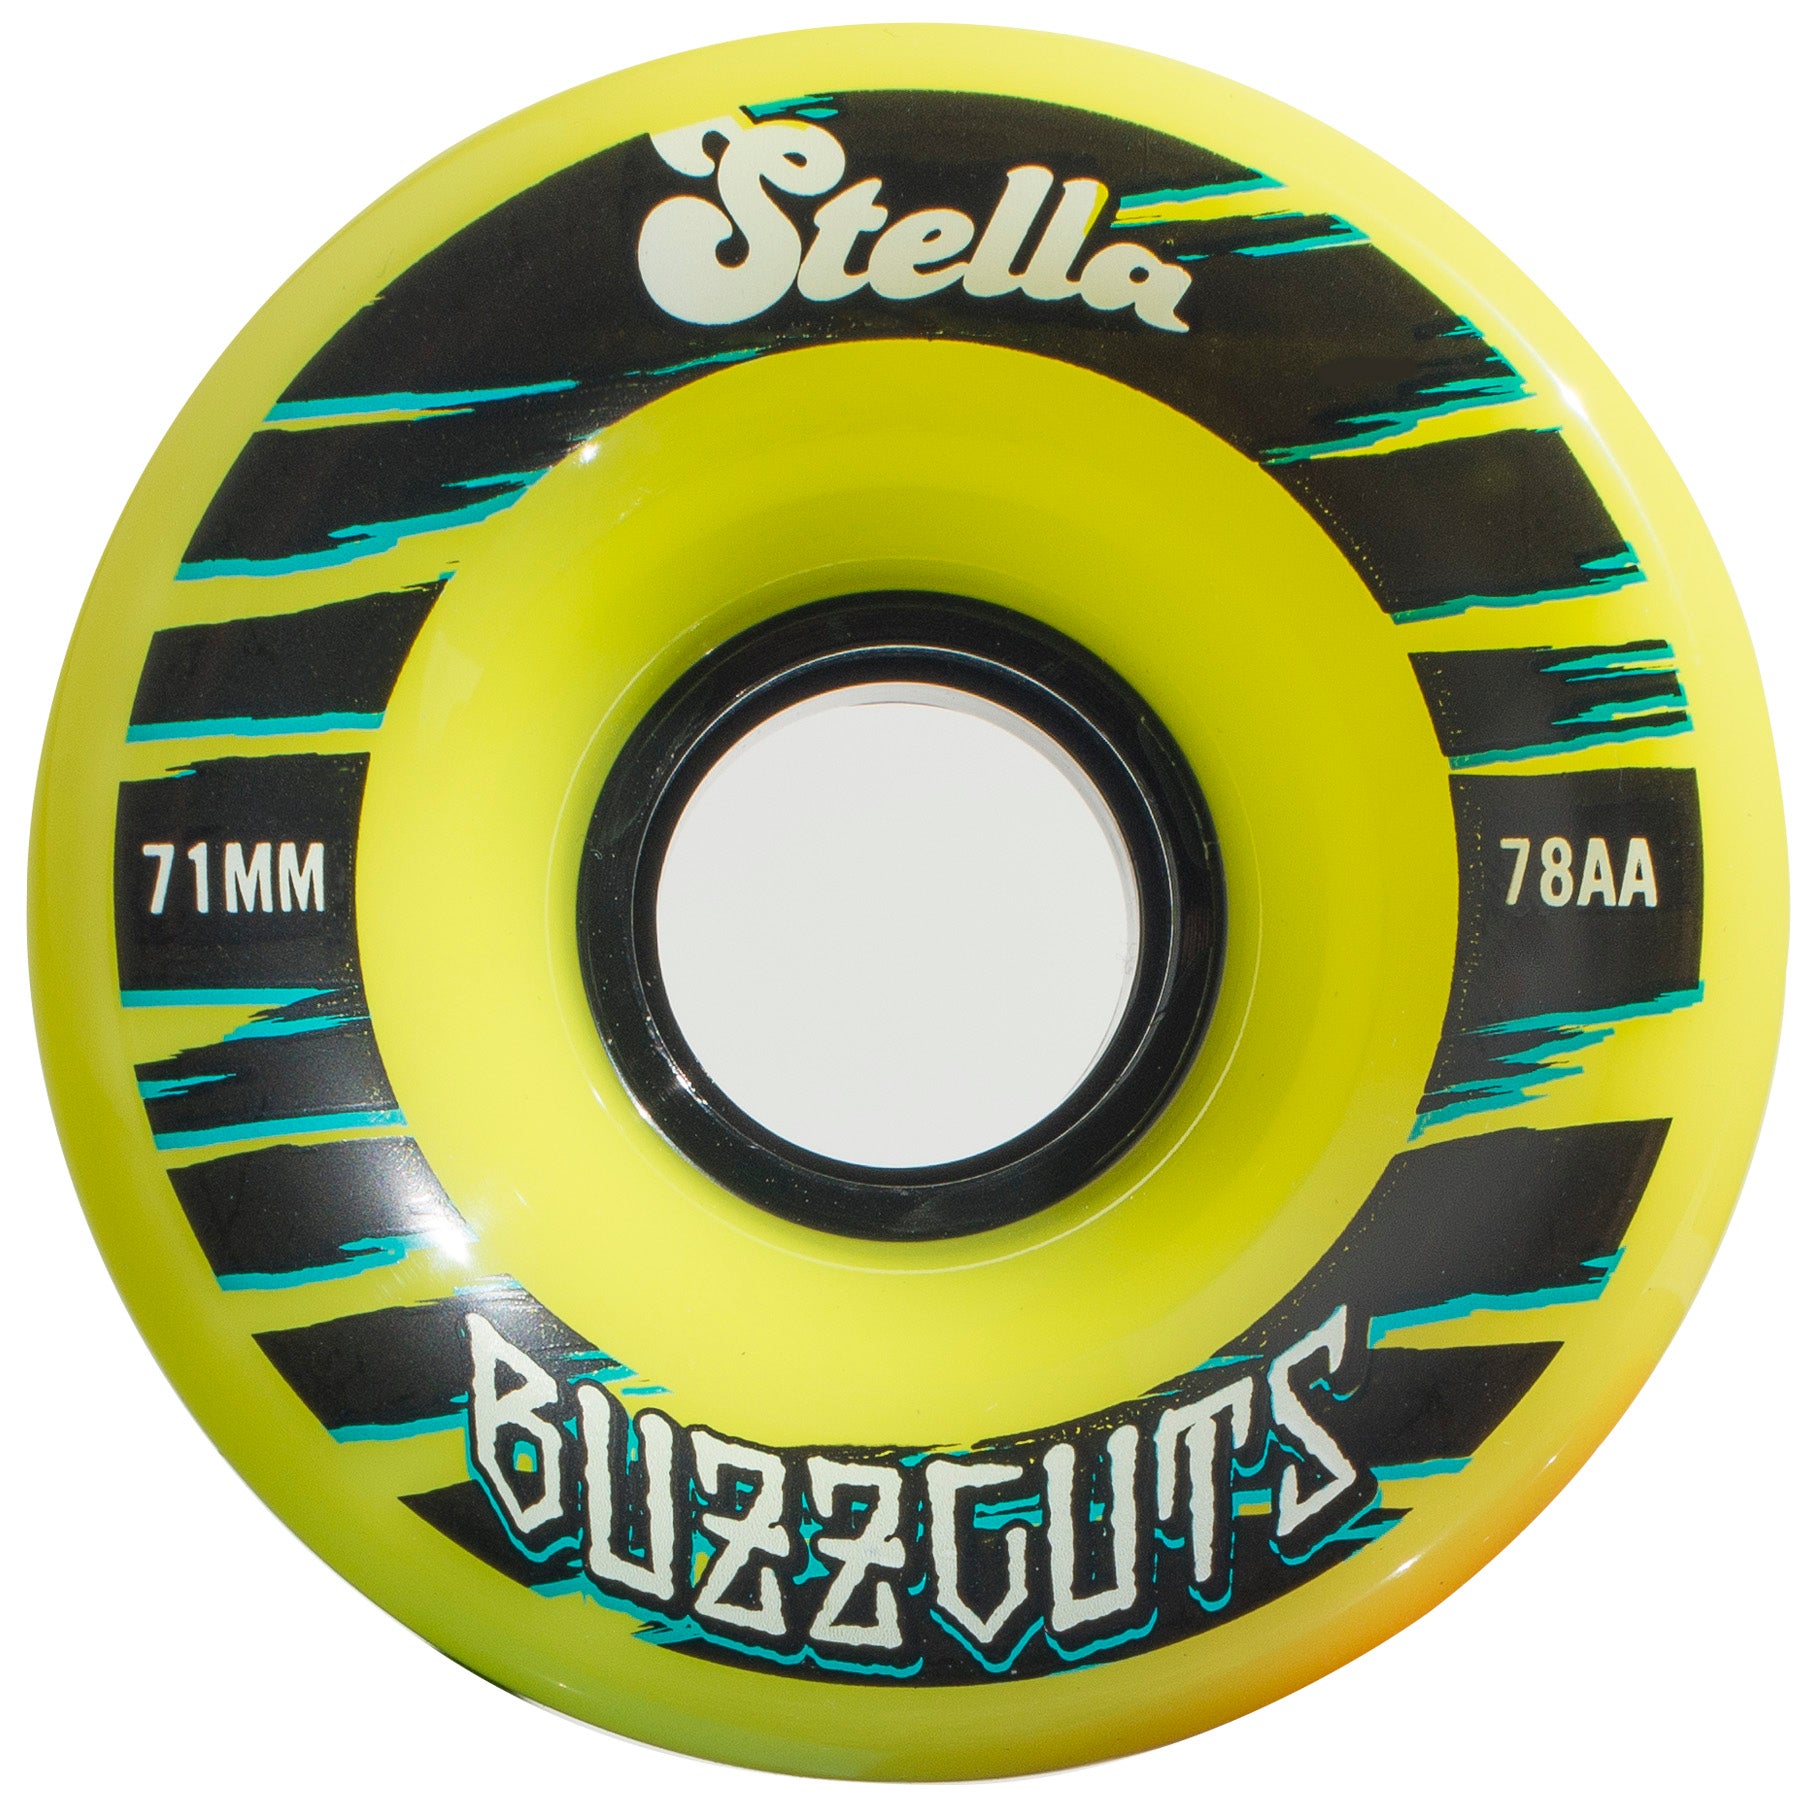 Stella Buzzcuts 71mm 83a Lime Wheel Set